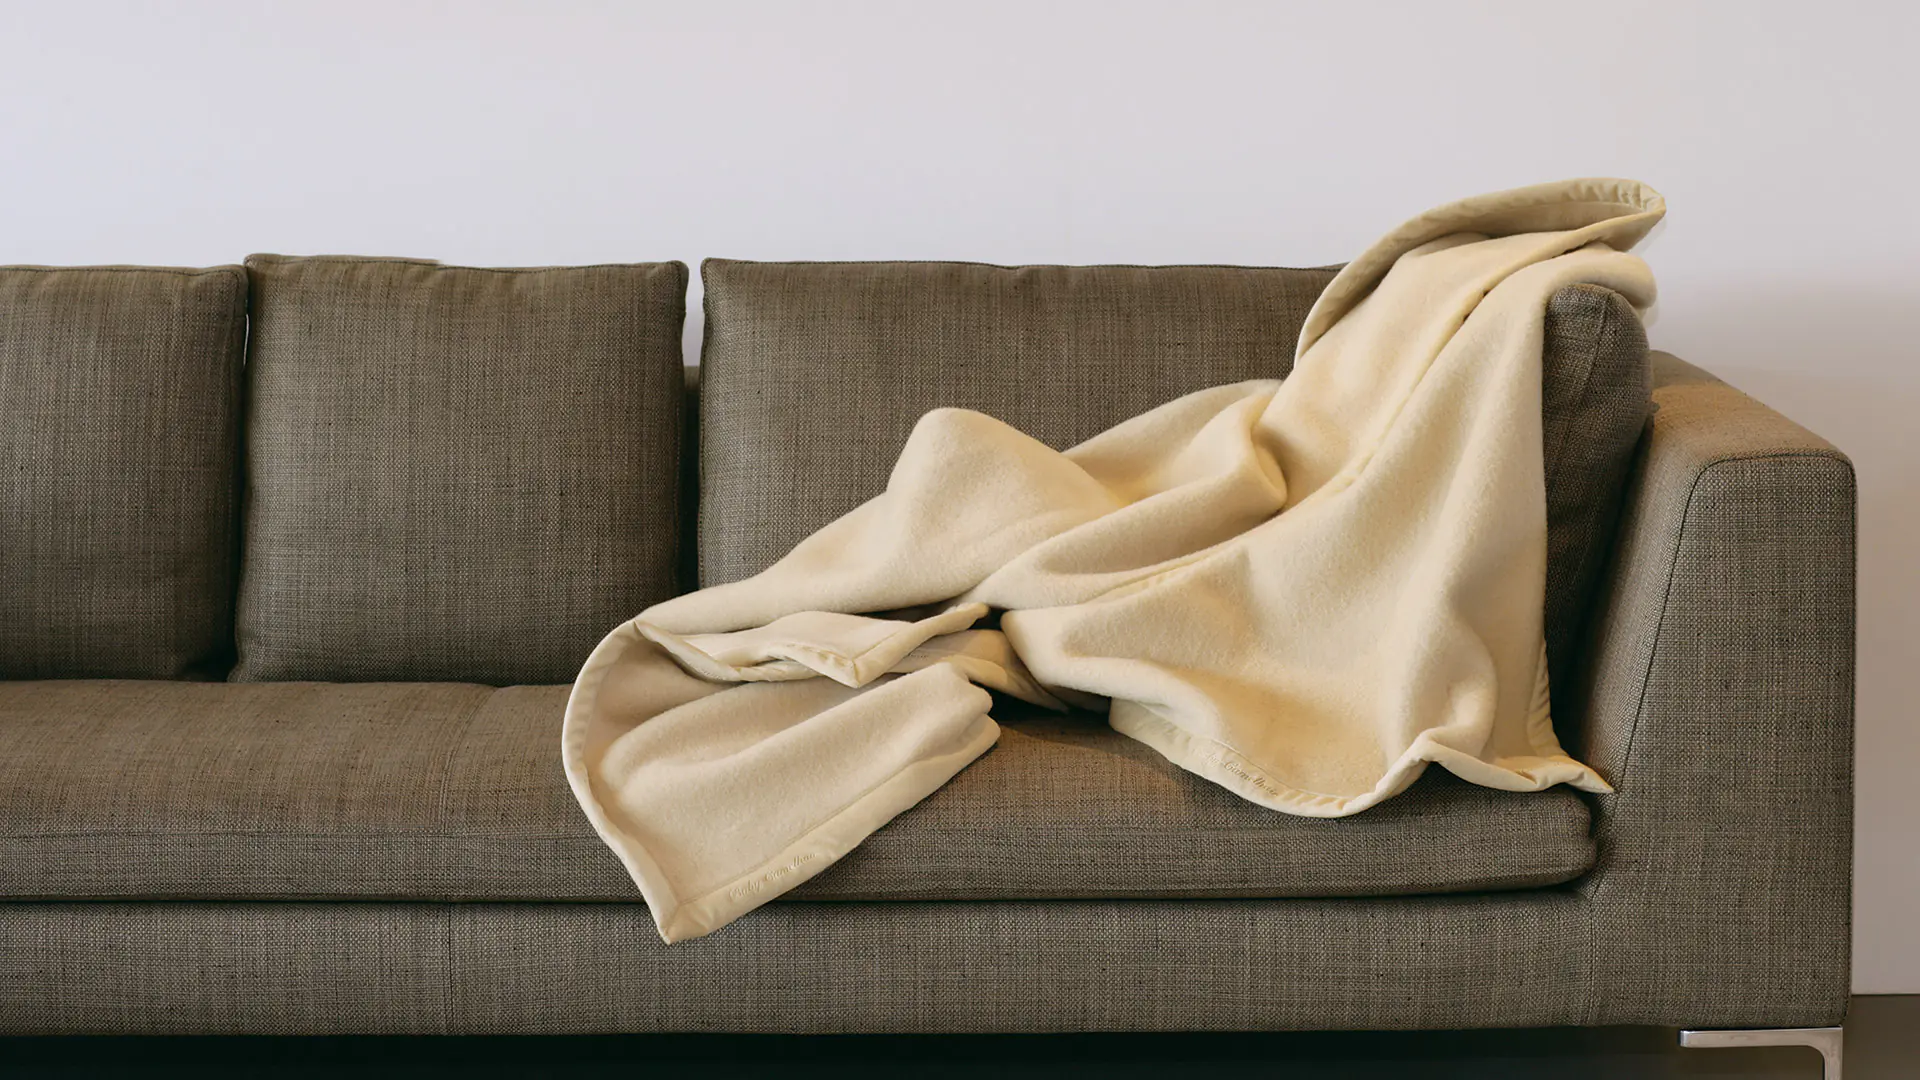 Merino deken van natuurlijk haar in de kleuren crème, antraciet, wit of camel verkrijgbaar